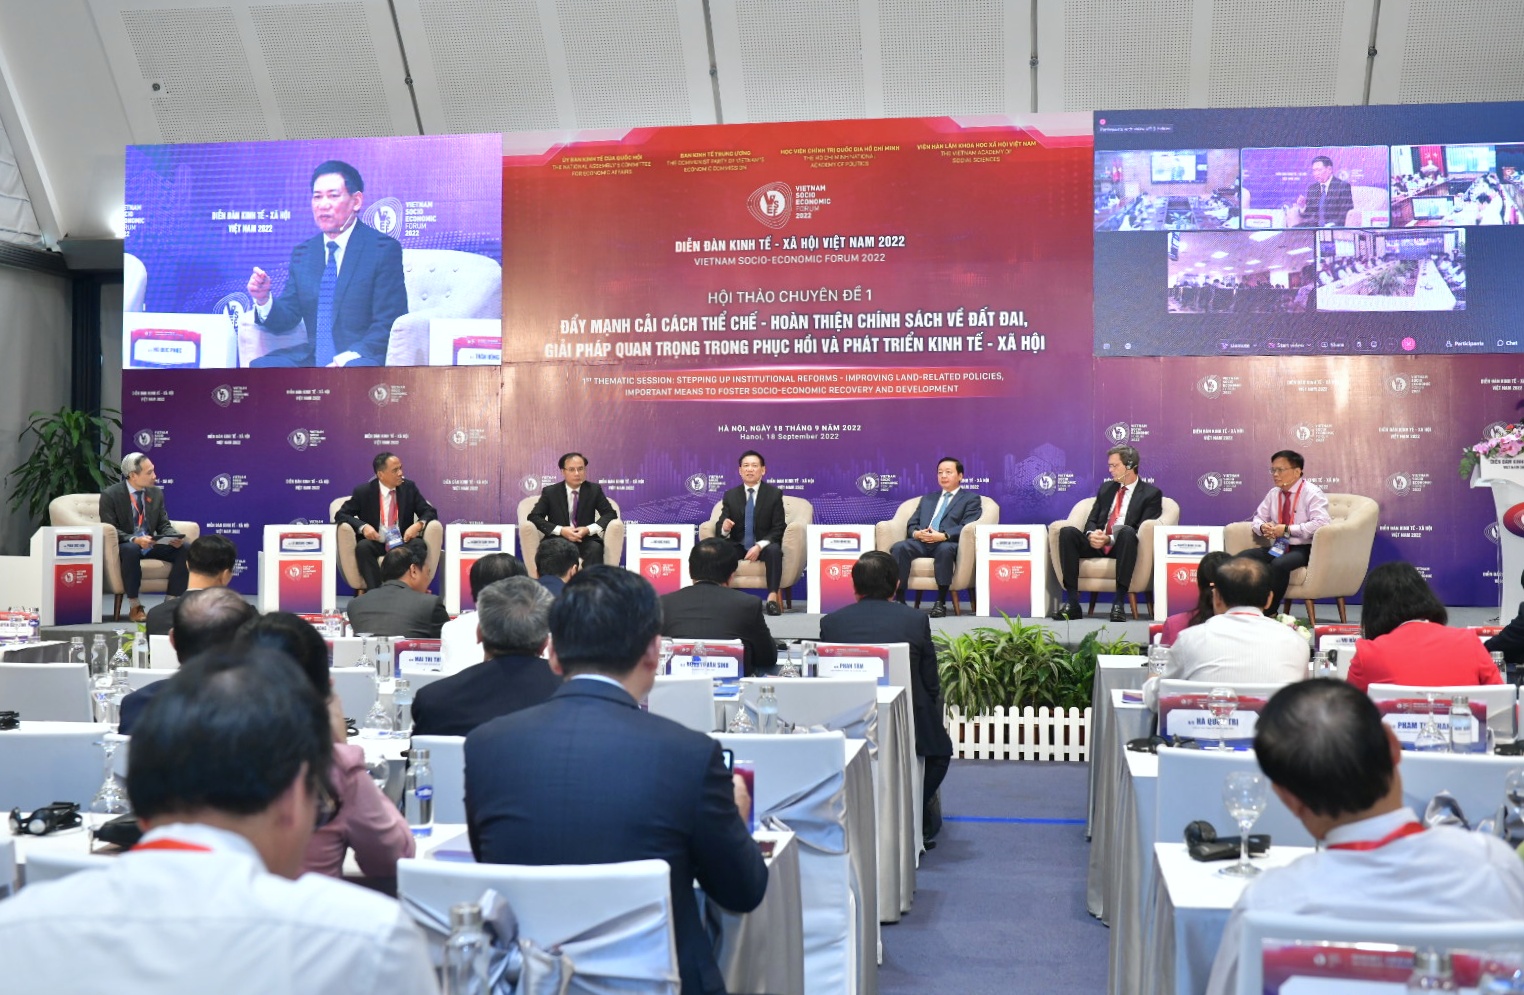 Full Video: Chuyên đề 01 - Diễn đàn Kinh tế - Xã hội Việt Nam VSEF 2022